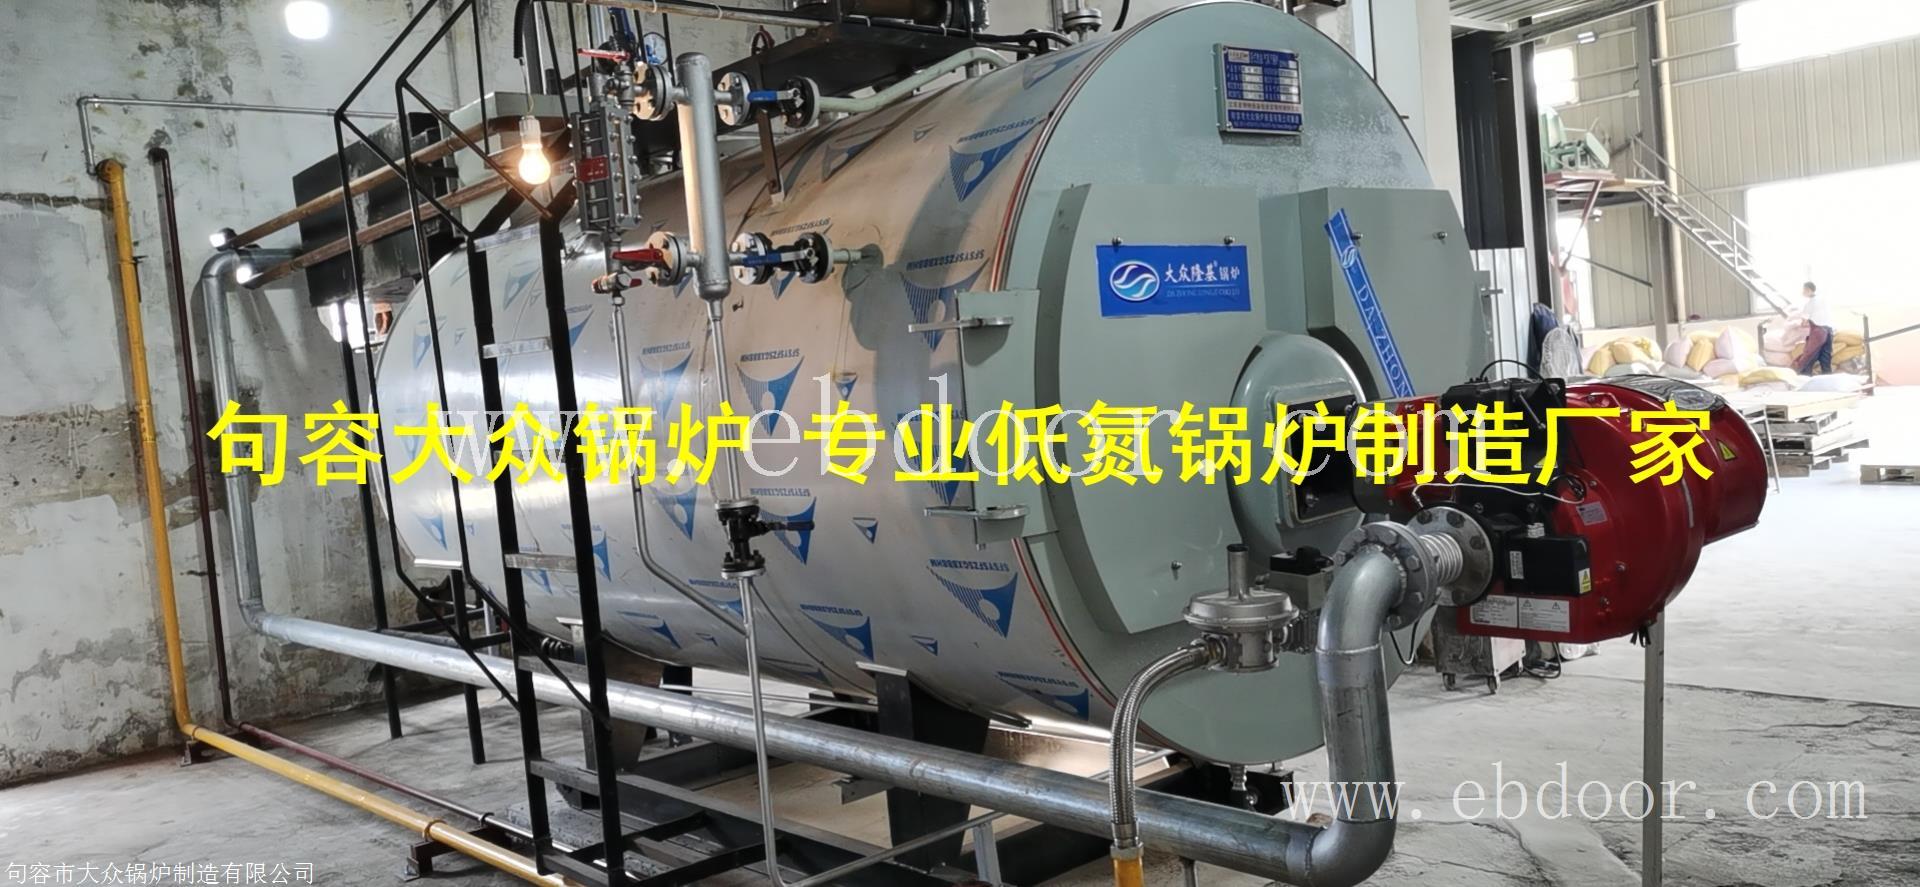 江苏天工工具锅炉低氮改造镇江无锡南通南京大众锅炉低氮改造2